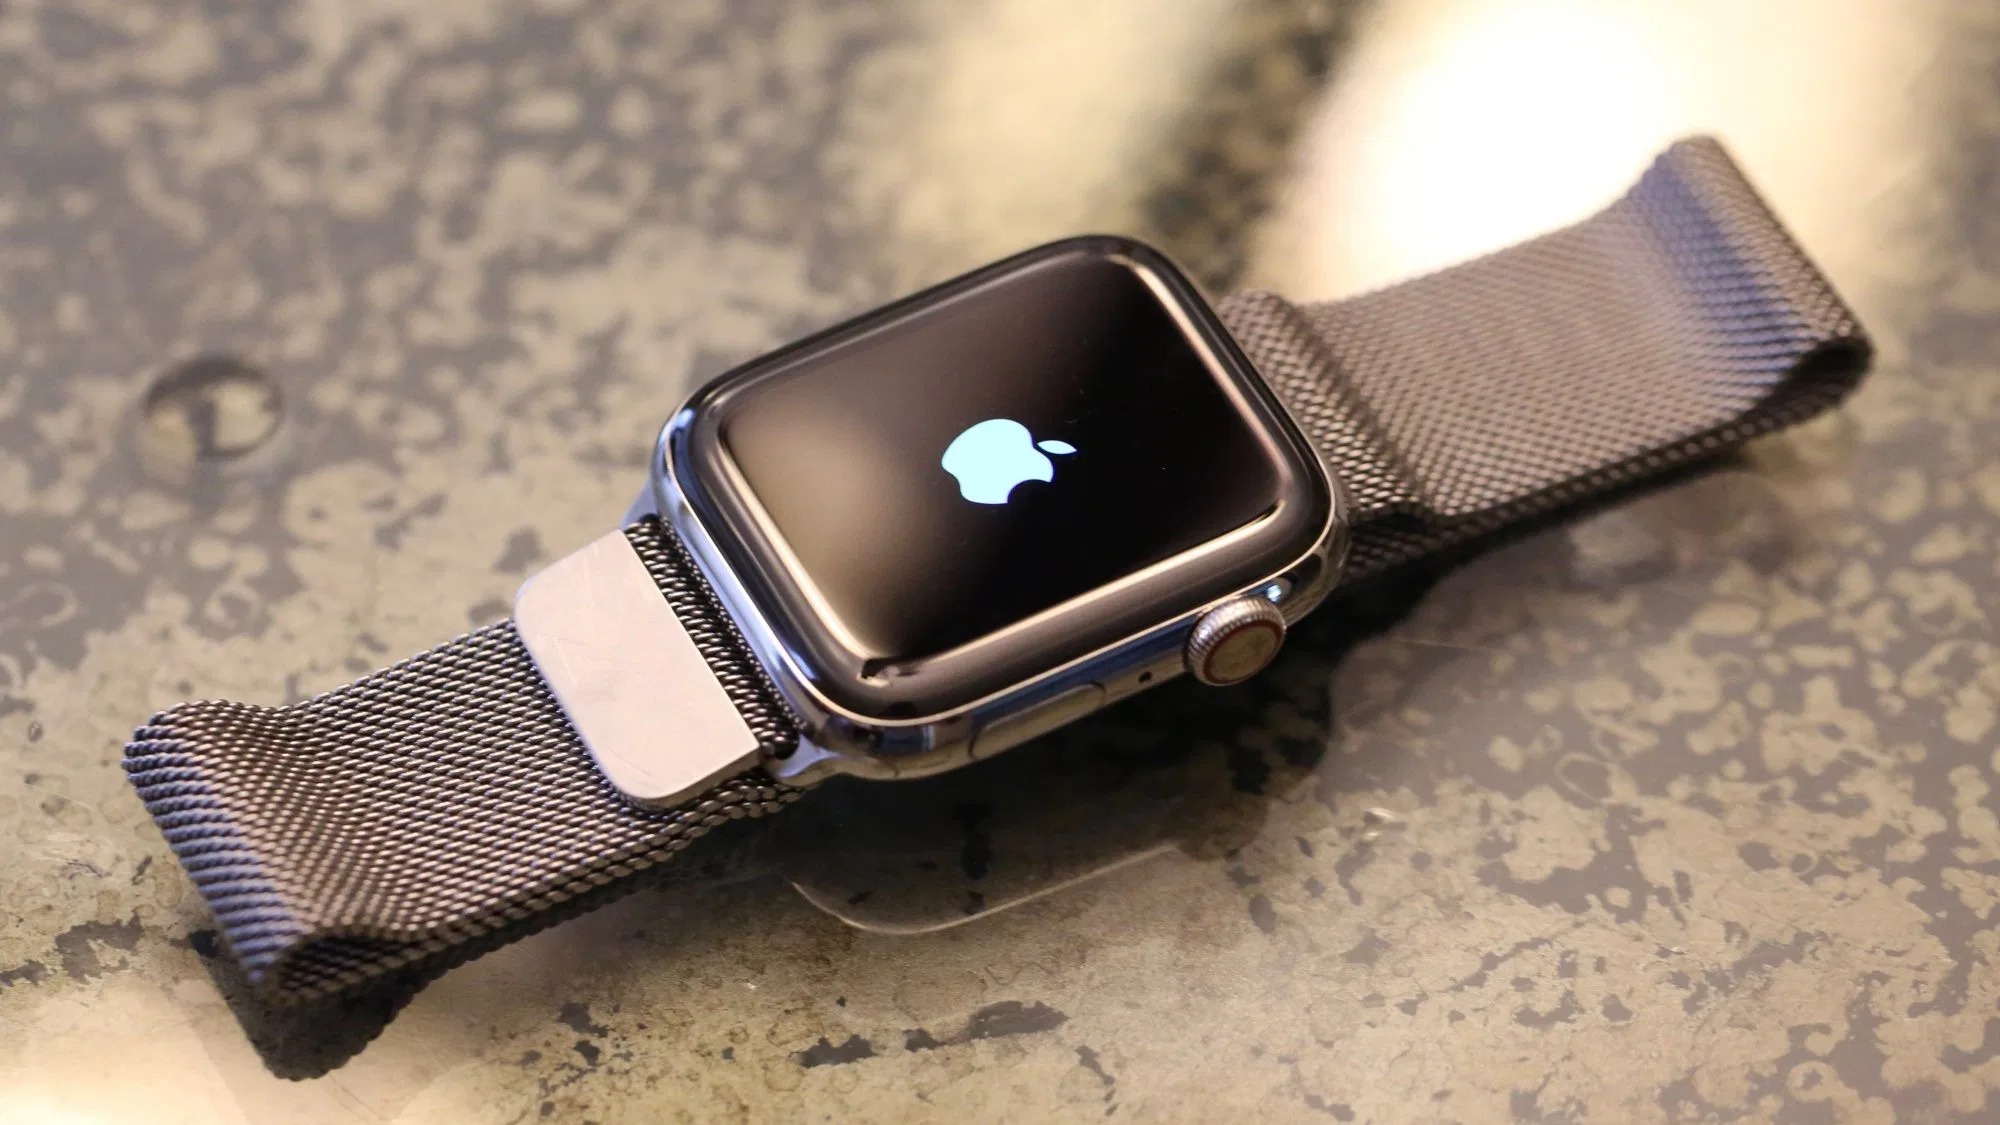 Đã có thể khôi phục firmware Apple Watch từ iPhone chạy iOS 15.4